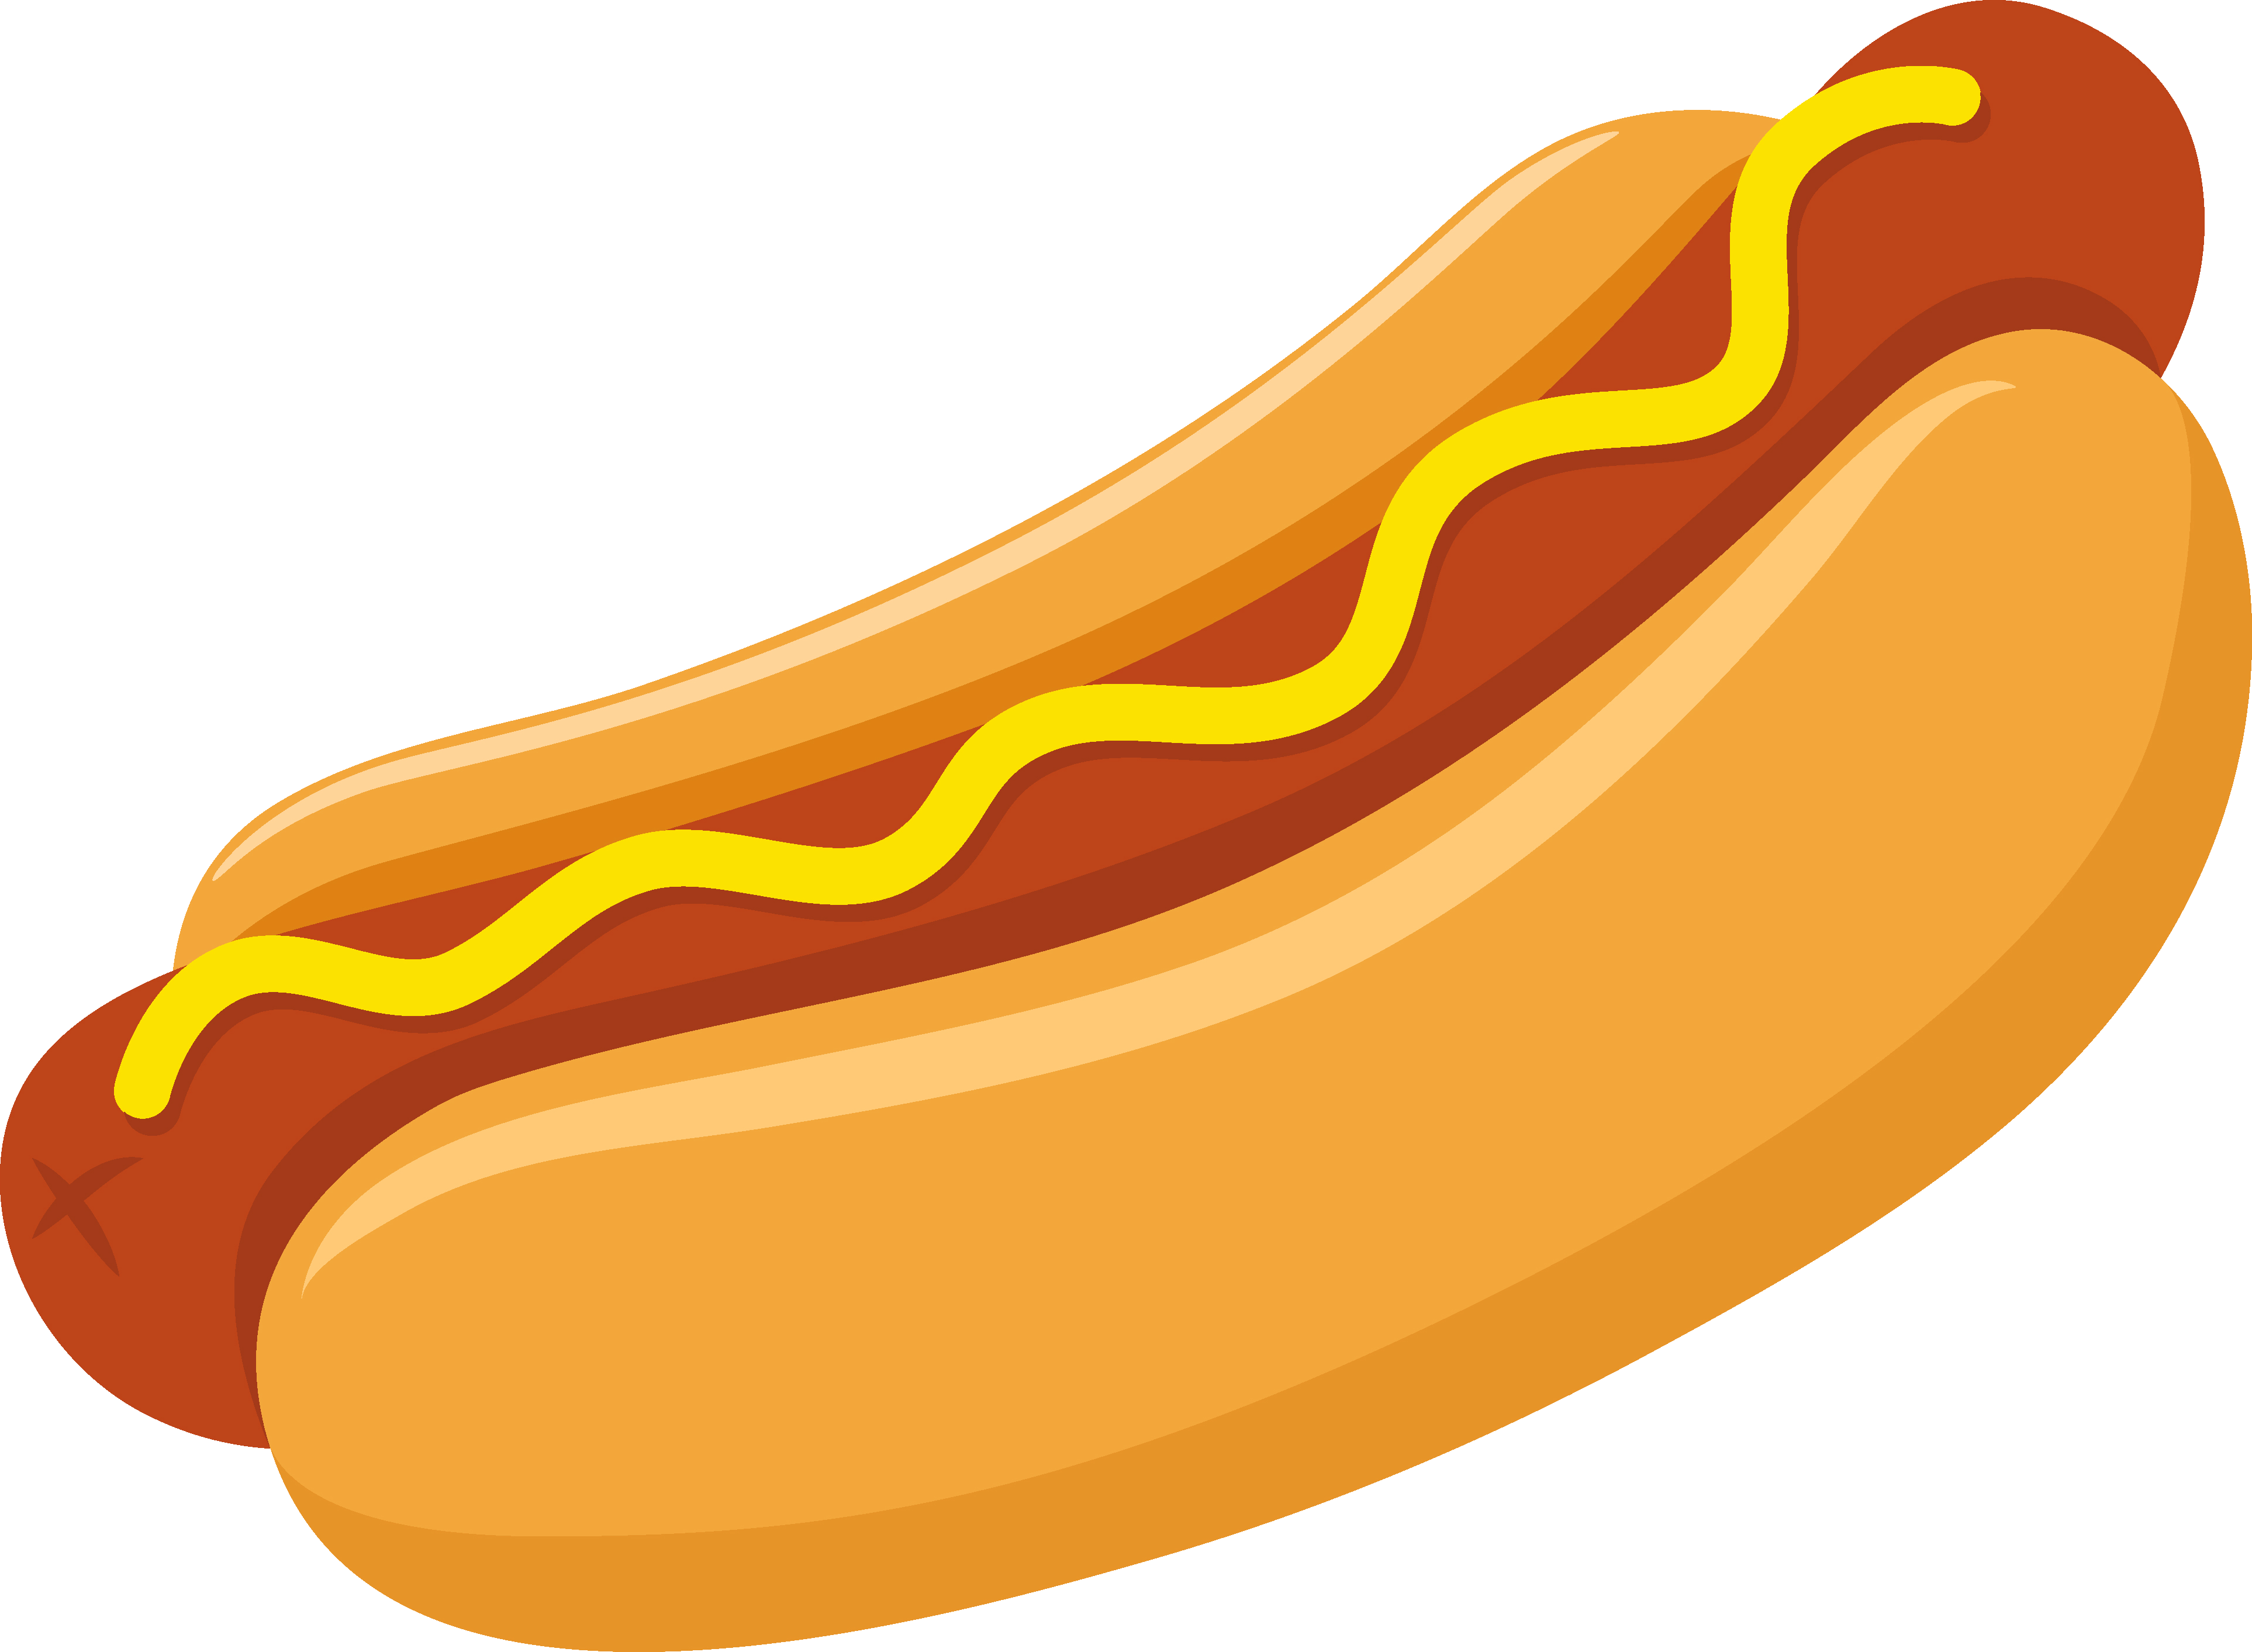 A hotdog in a plain bun with mustard